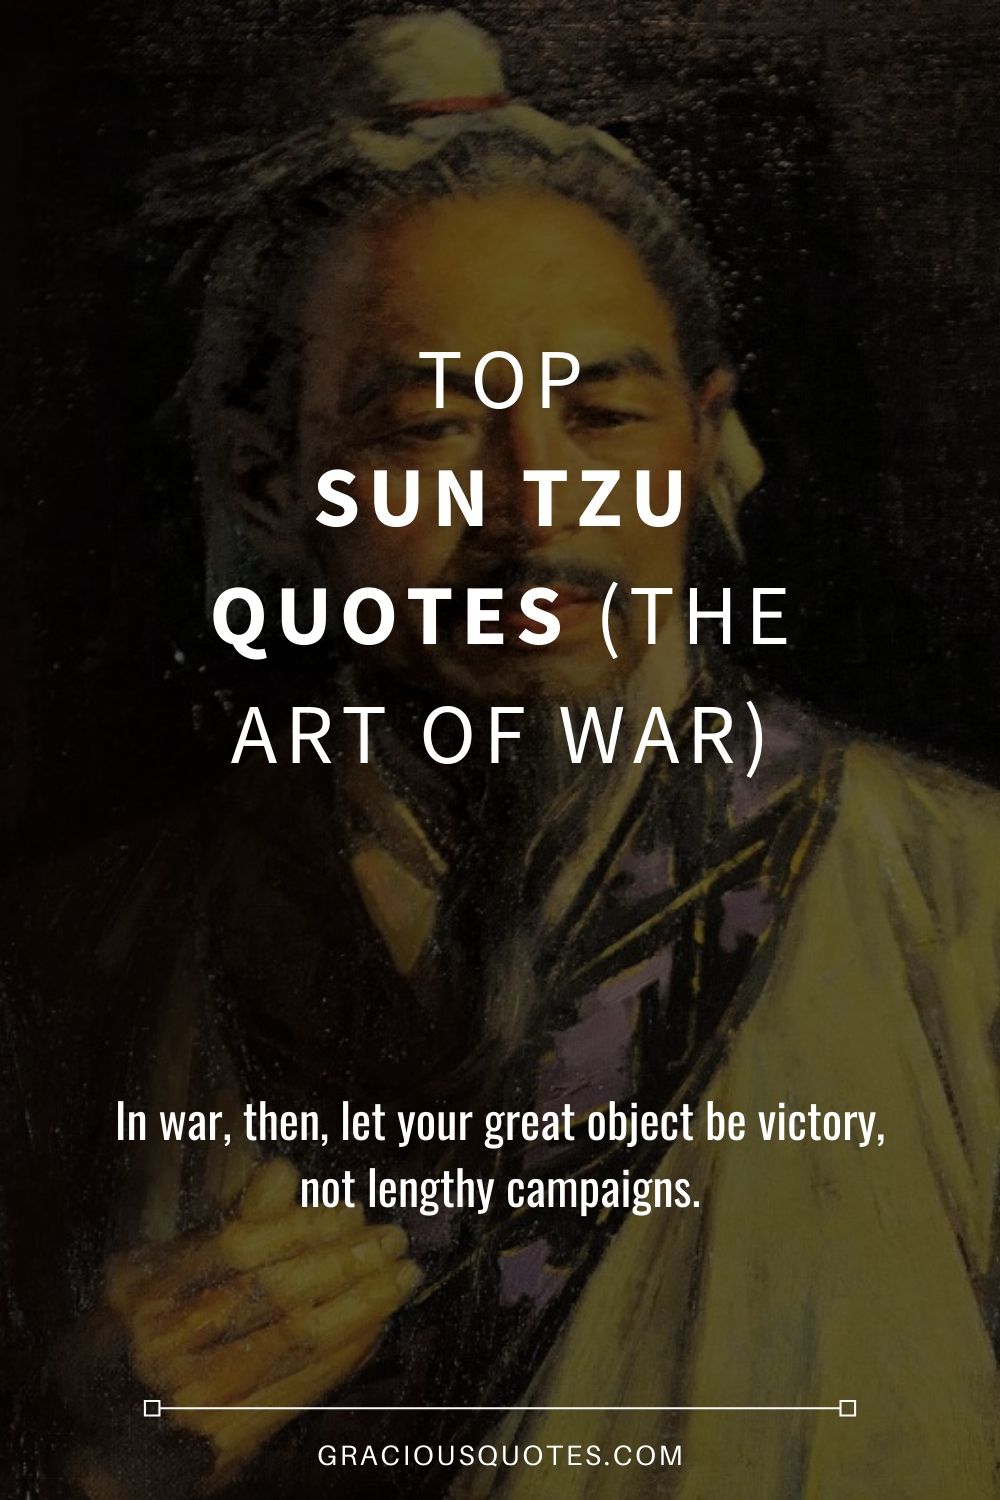 Top Sun Tzu Quotes (THE ART OF WAR) - Gracious Quotes